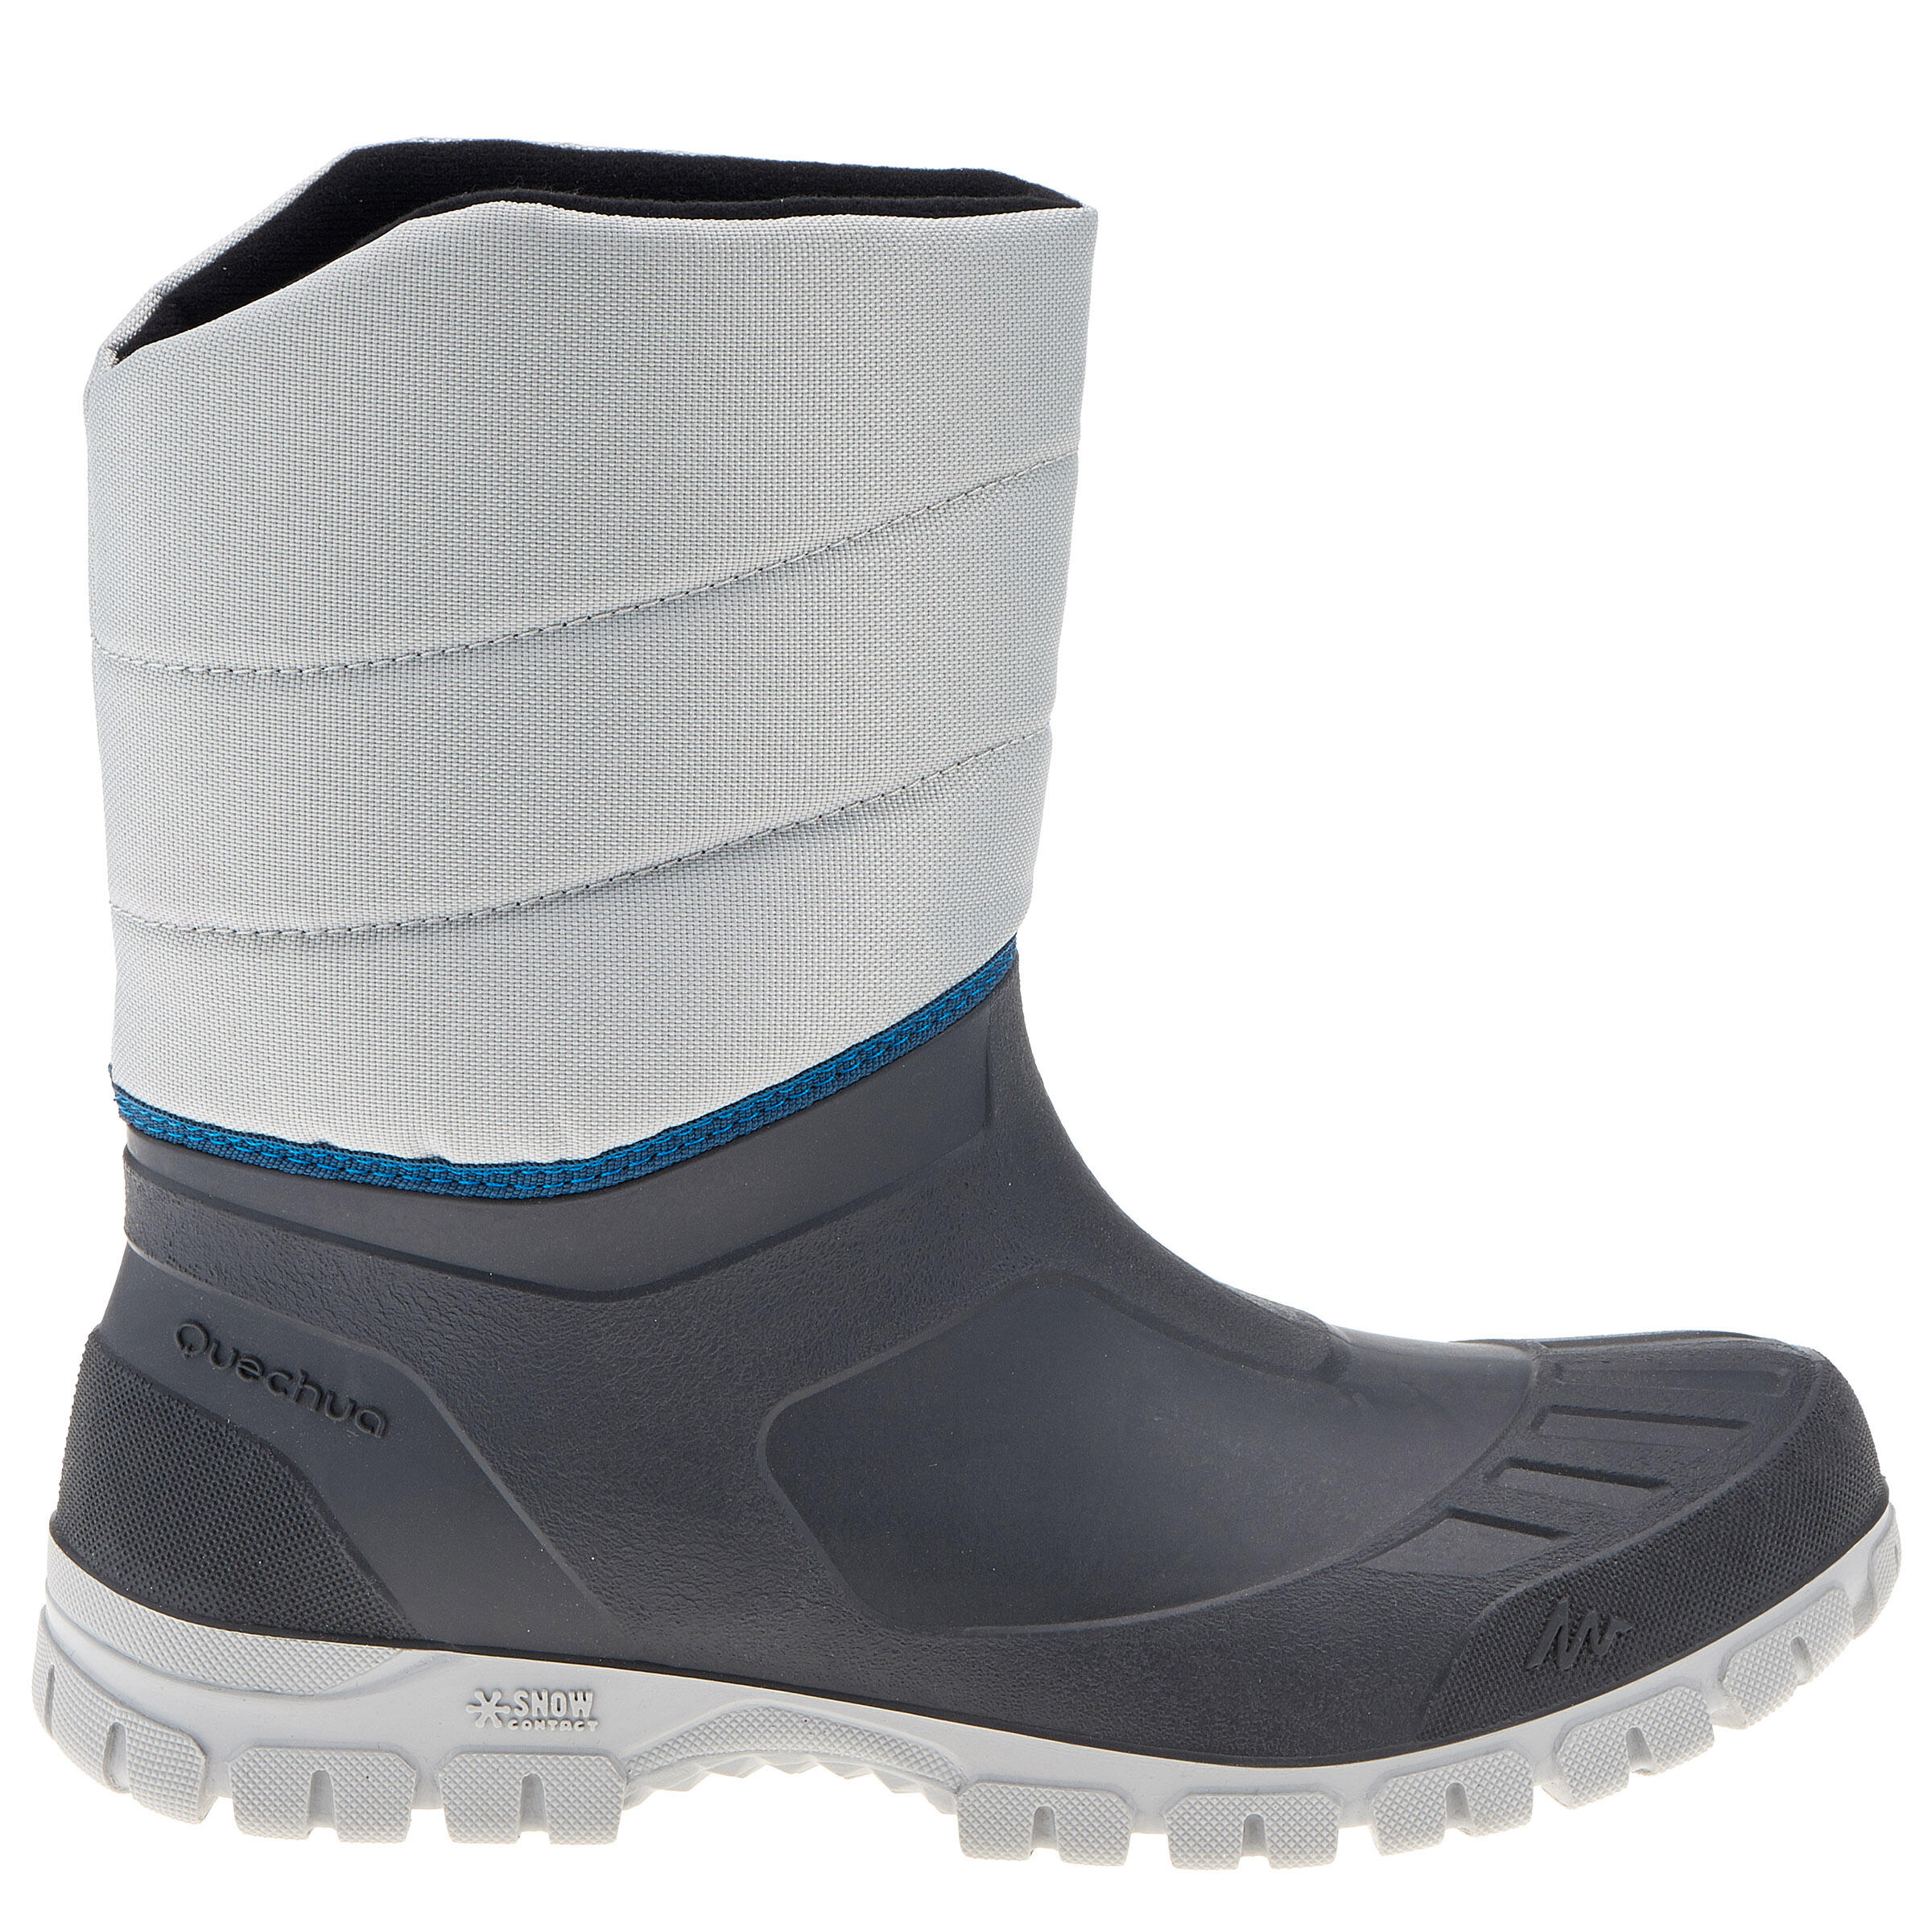 Arpenaz 50 Warm waterproof men's hiking boots - Grey 2/14